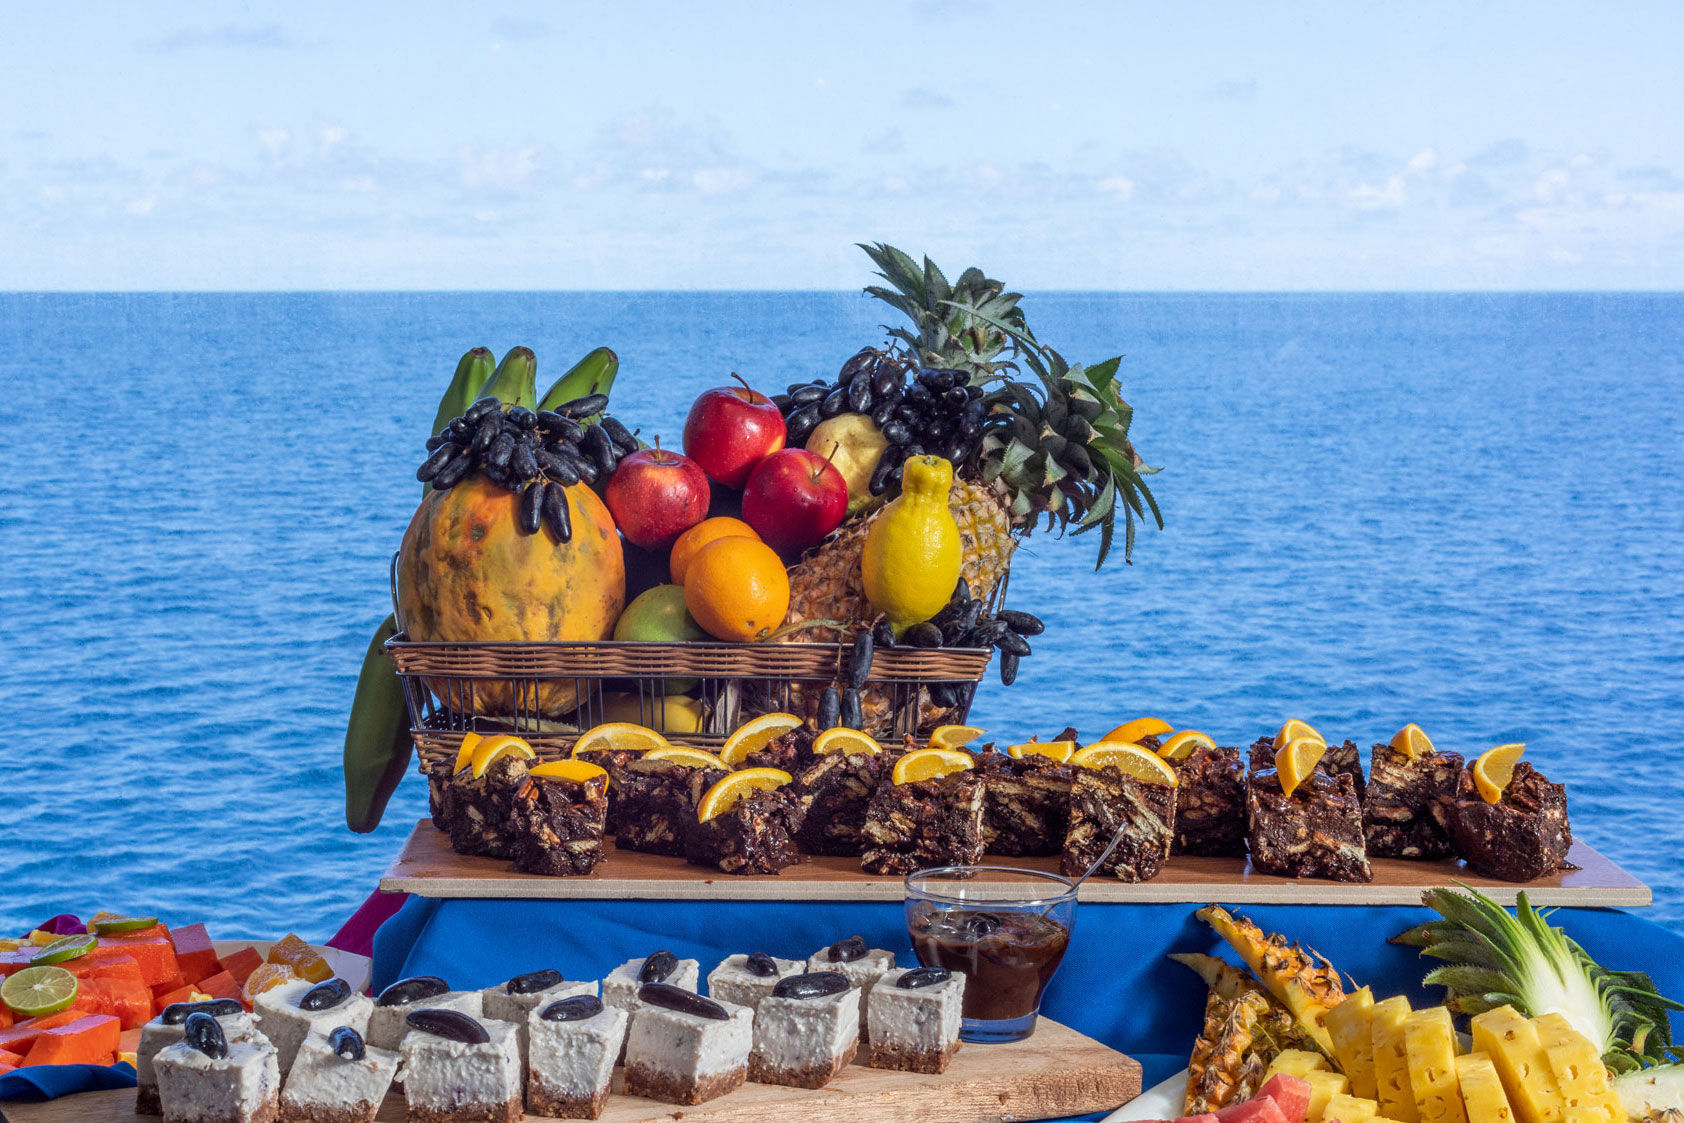 船のお食事 - Maldives Aggressor II